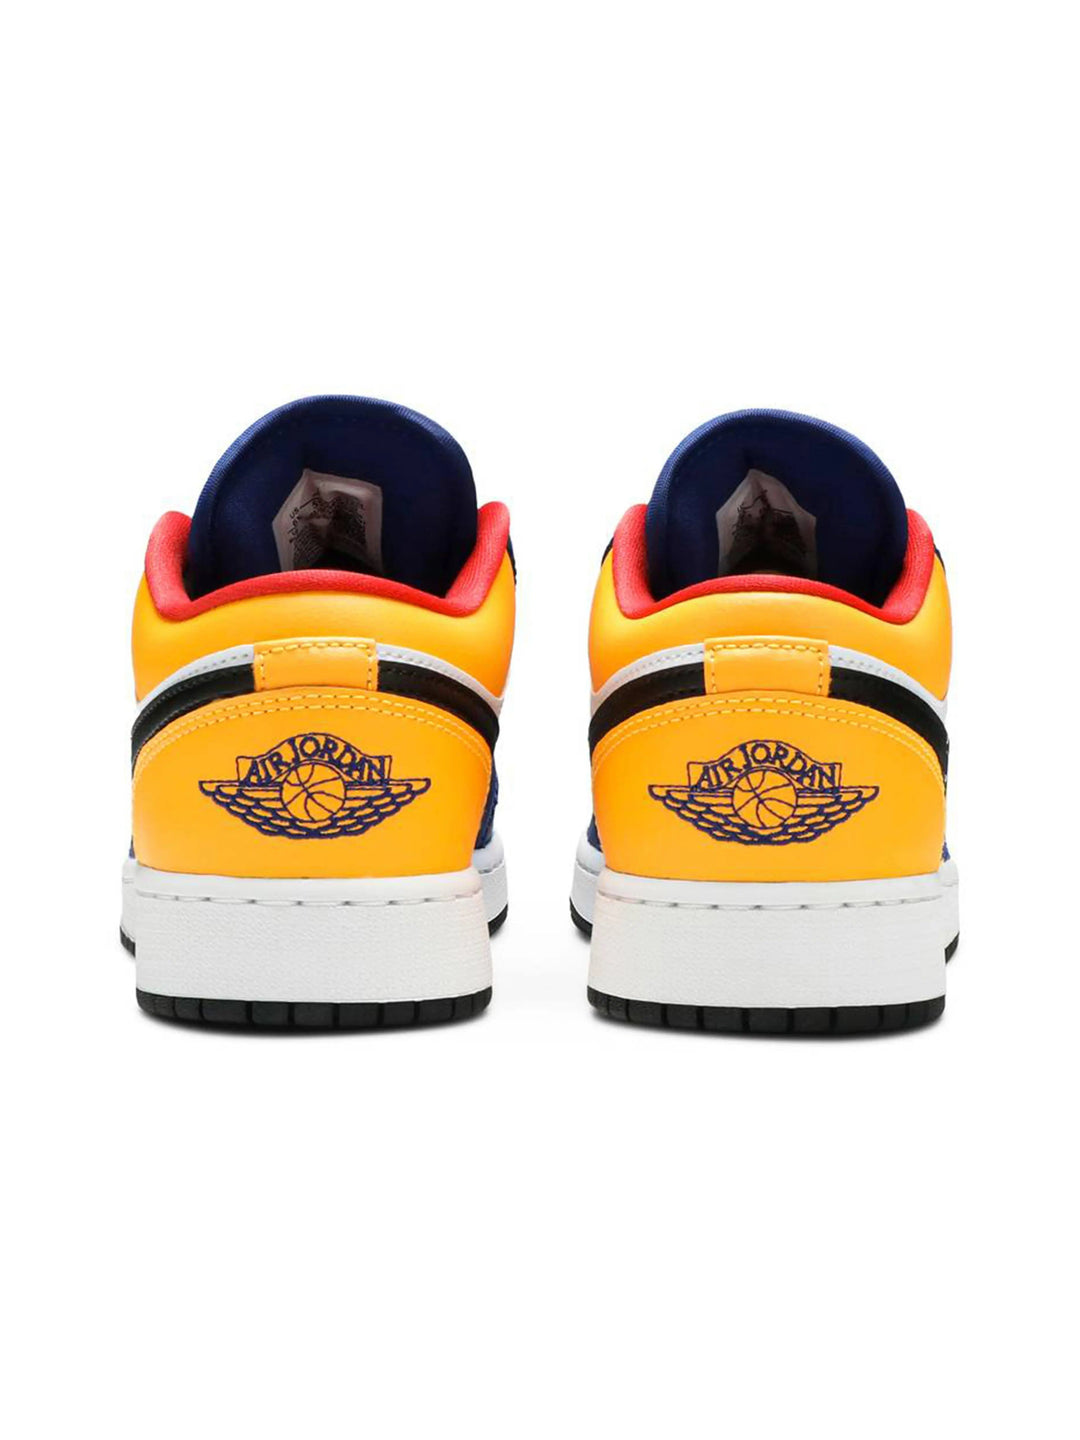 Nike Air Jordan 1 Low Royal Yellow Prior